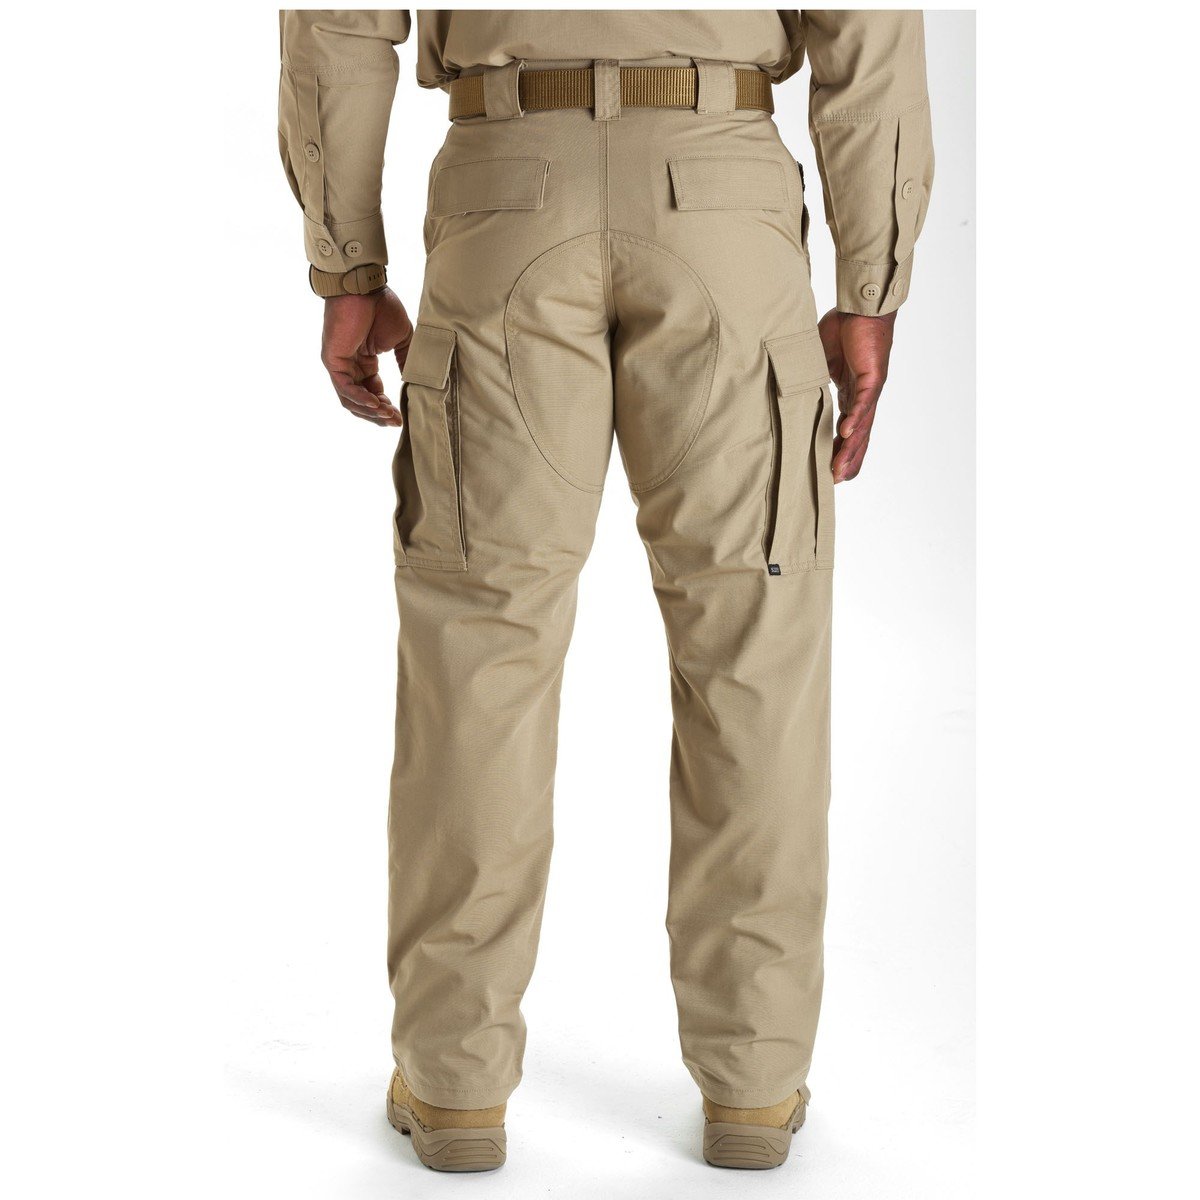 5.11 Ripstop TDU Pants Khaki Pants 5.11 Tactical Small / Regular Tactical Gear Supplier Tactical Distributors Australia